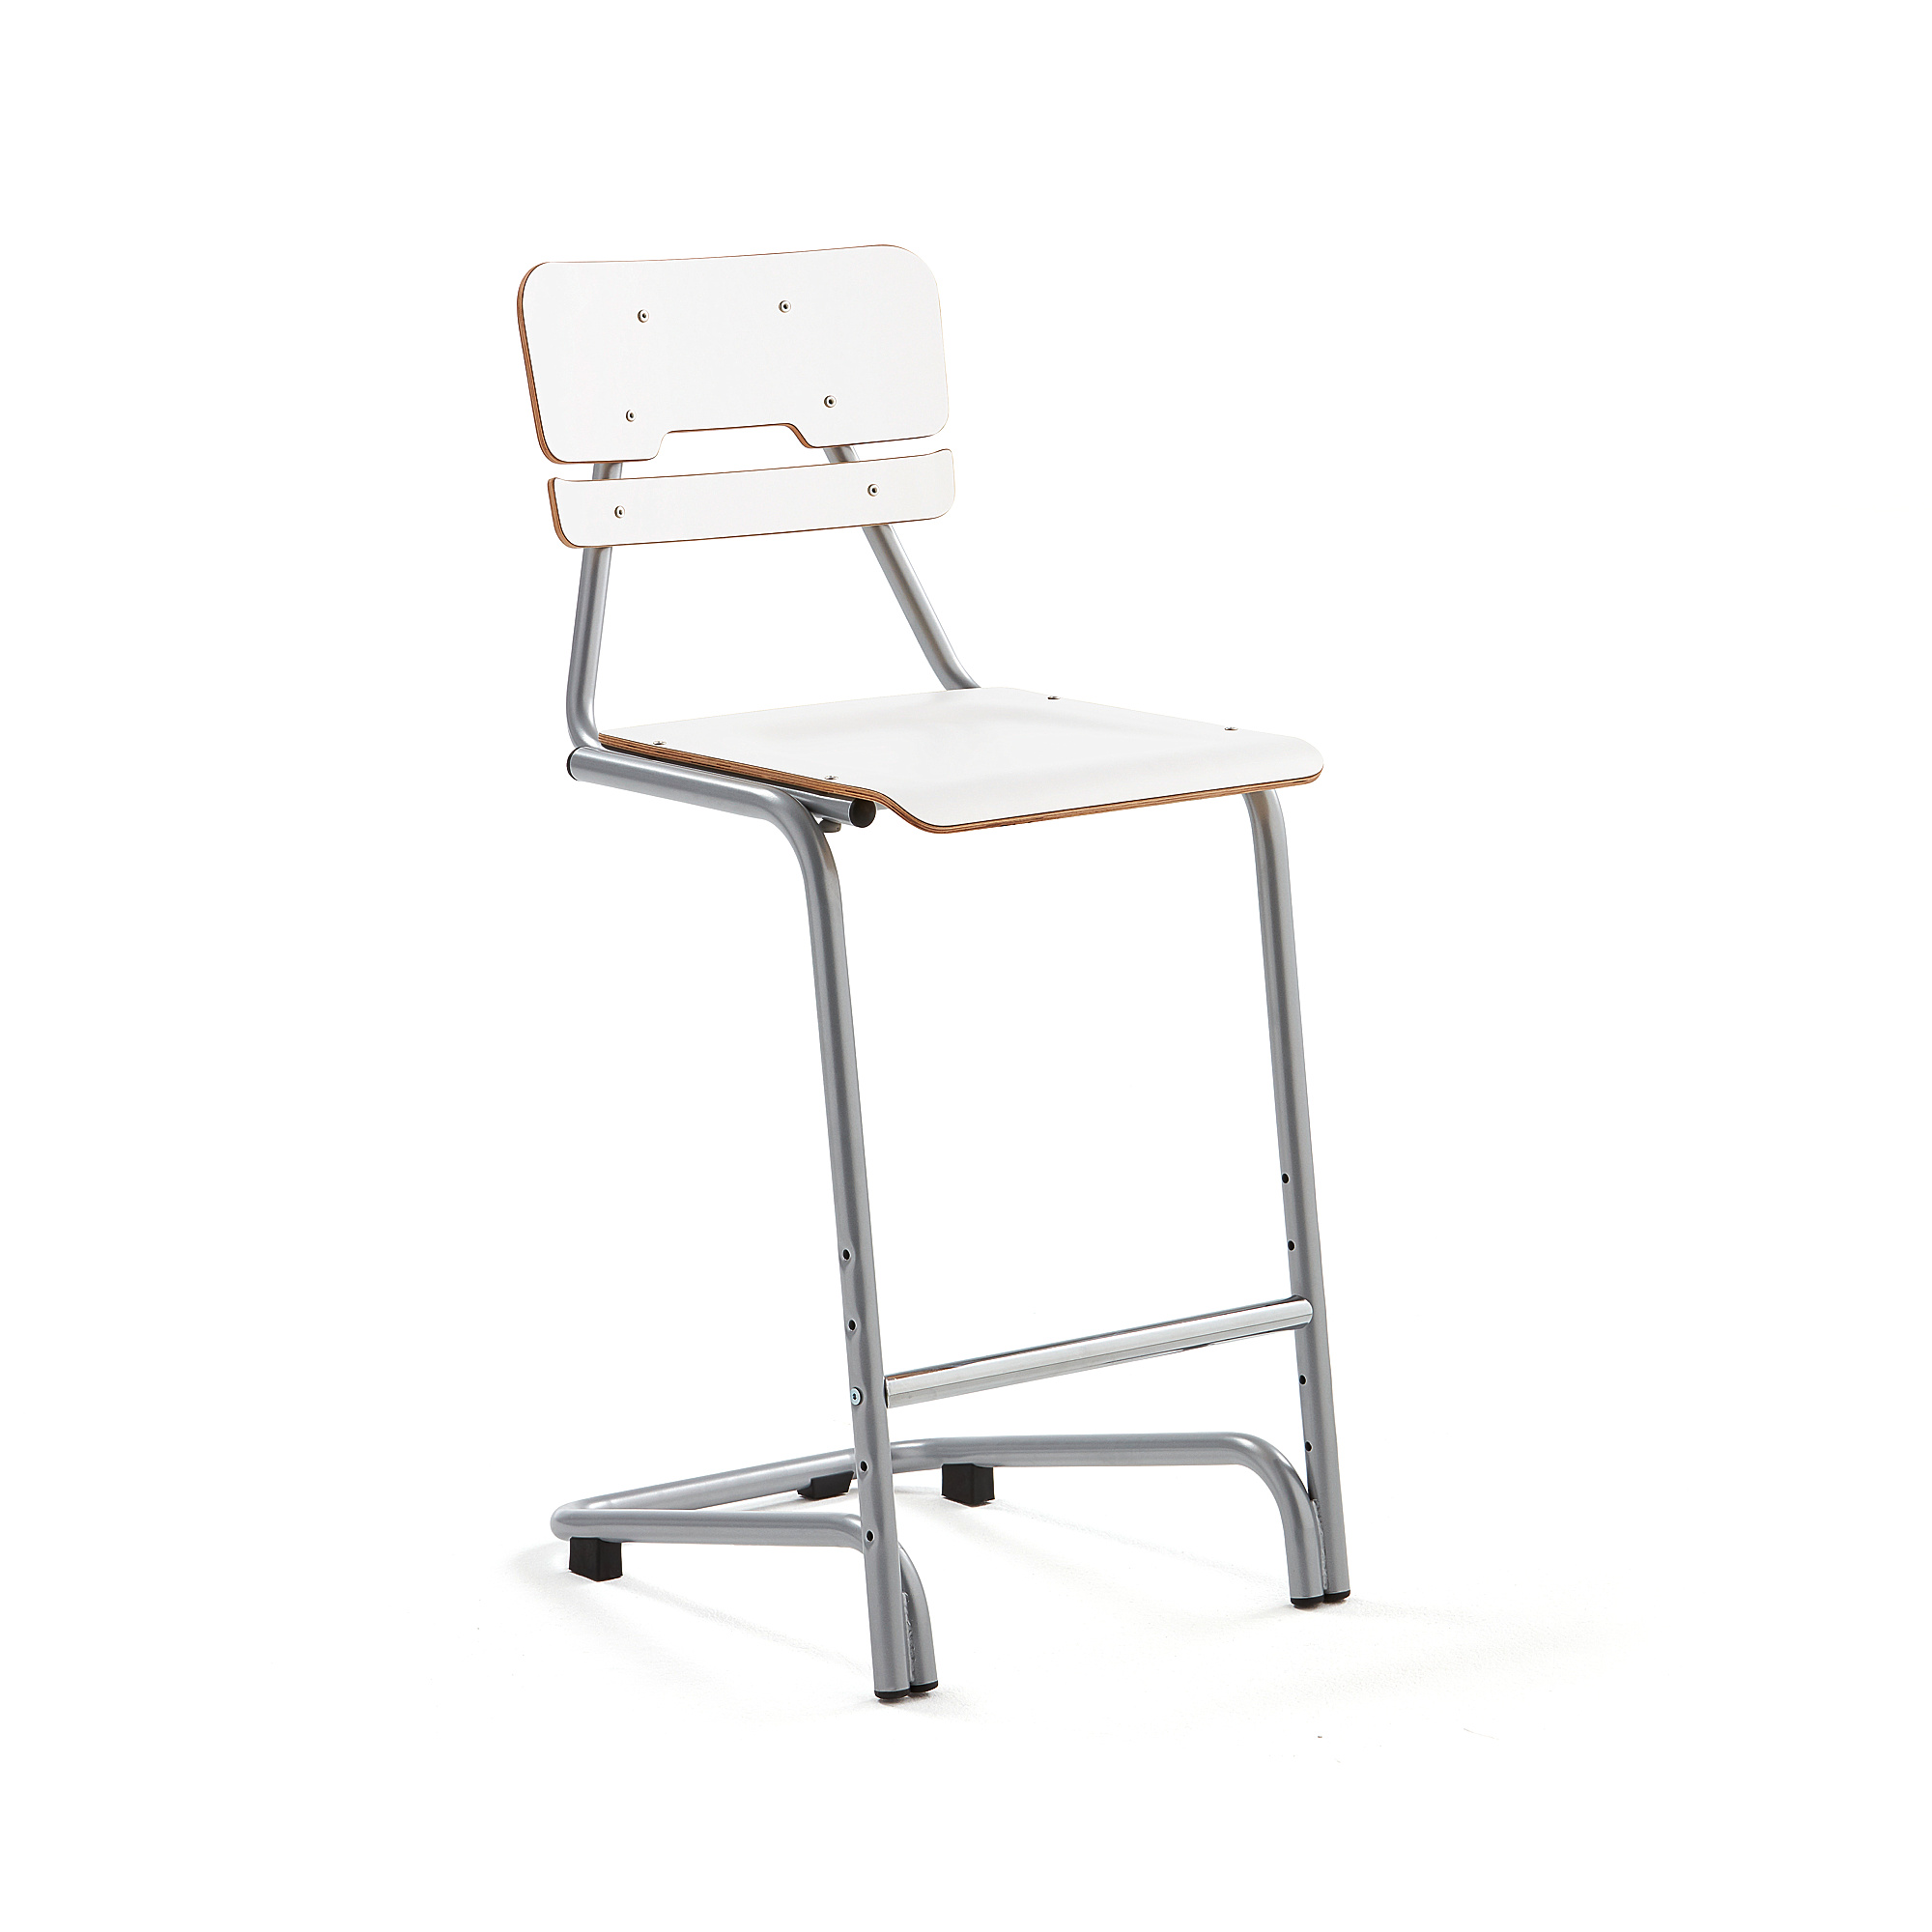 Školní židle DOCTRINA, výška 650 mm, bílá